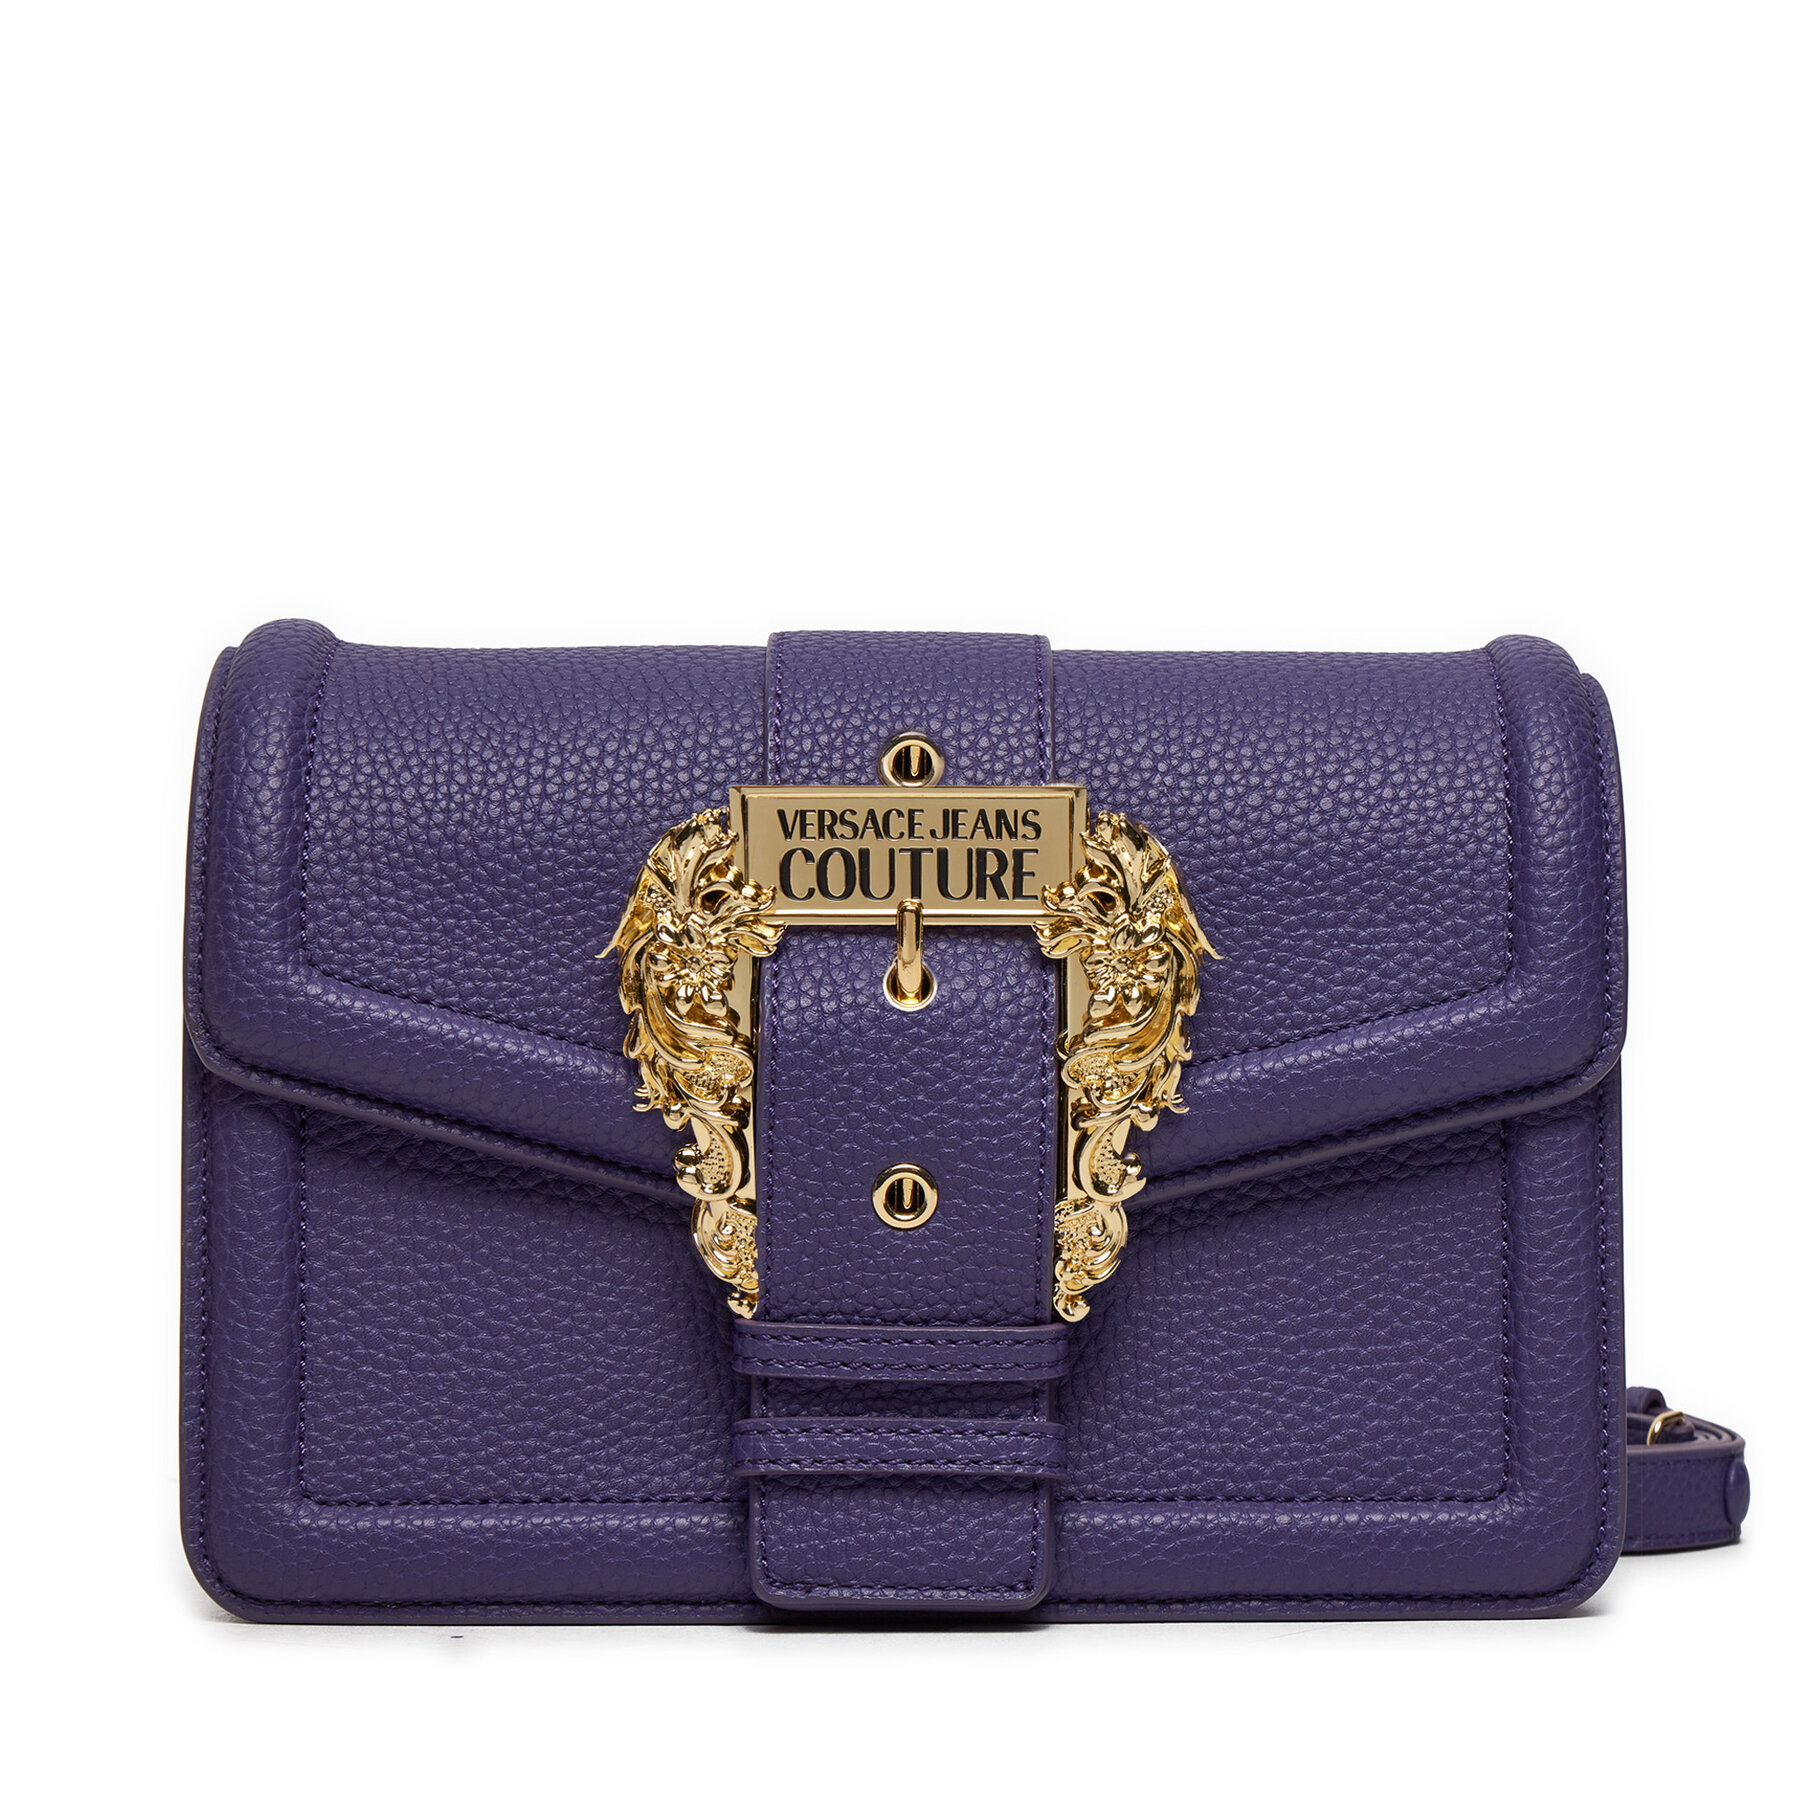 Handtasche Versace Jeans Couture 75VA4BF1 Violett von Versace Jeans Couture